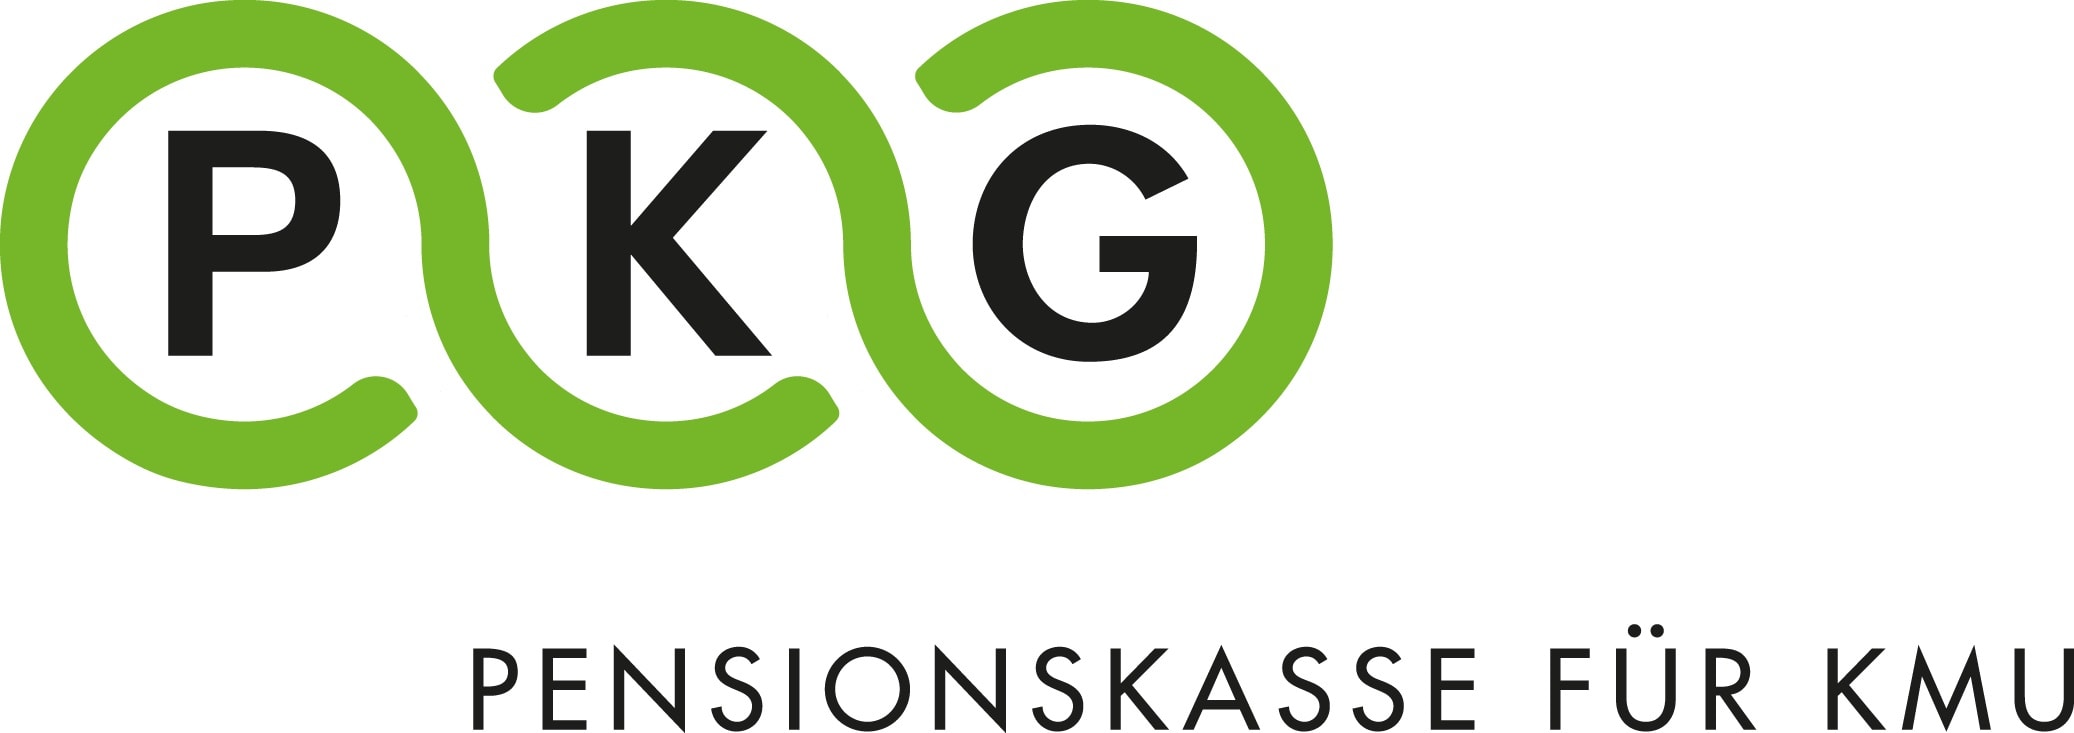 pkg_logo